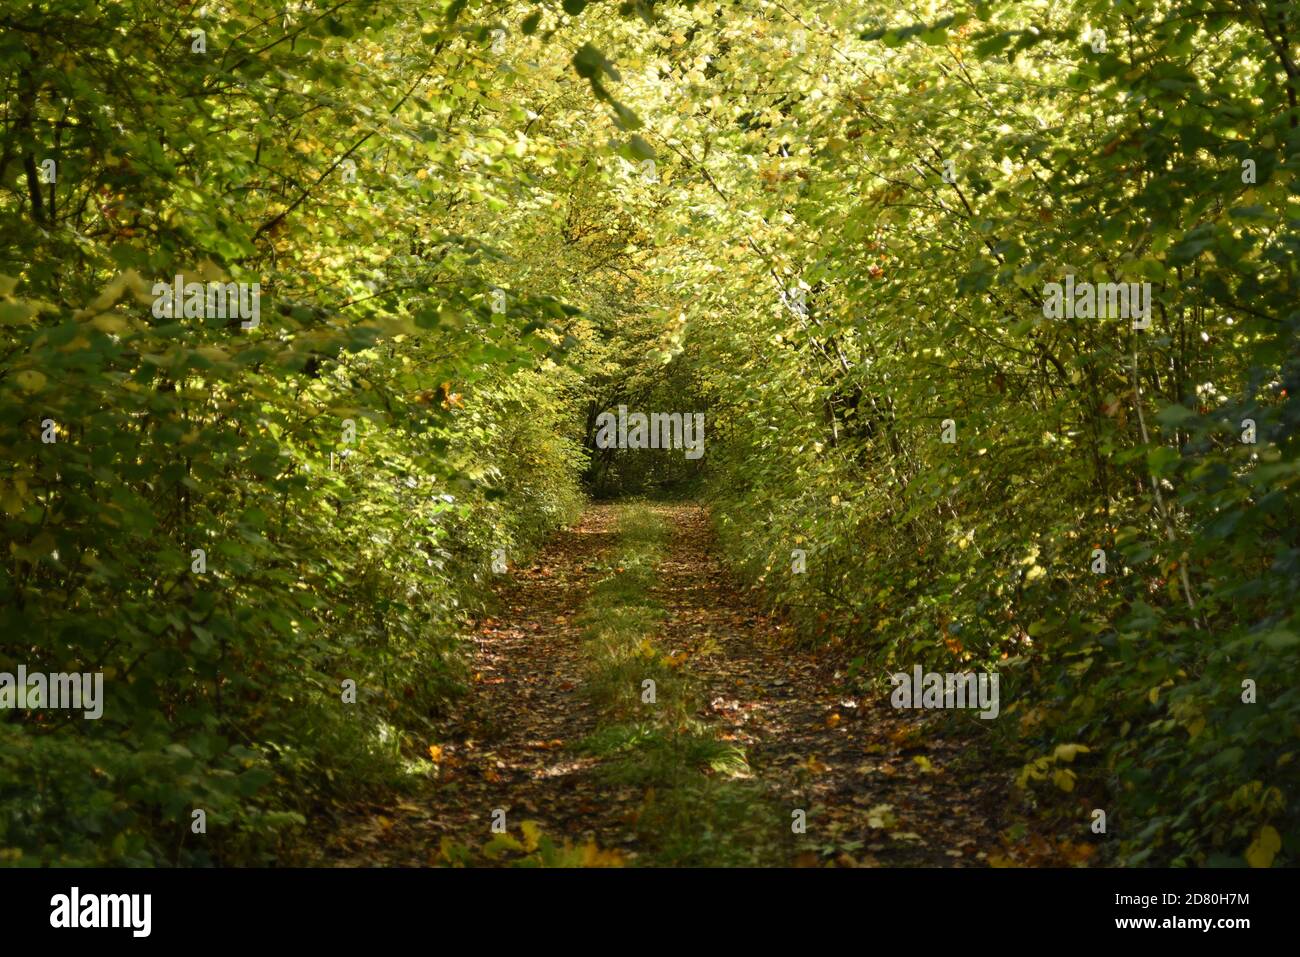 Autumn tunnel path through trees Stock Photo